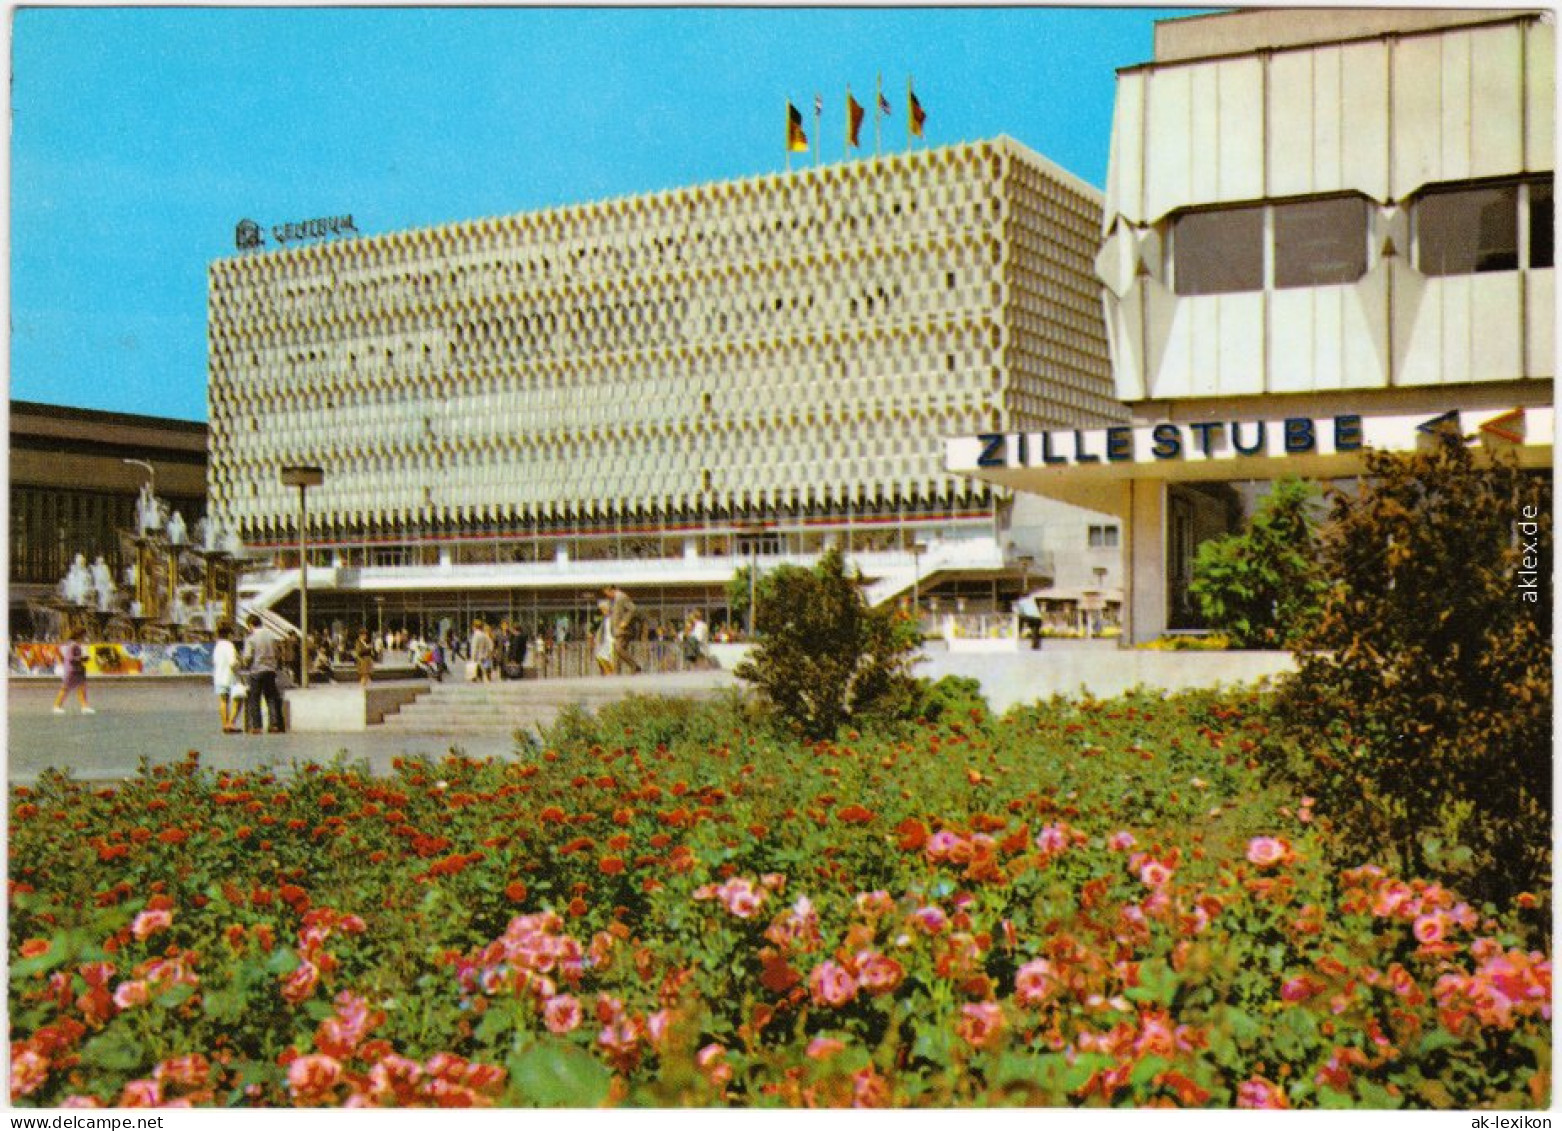 Ansichtskarte Mitte Berlin Centrum-Warenhaus, Belebt 1974 - Mitte